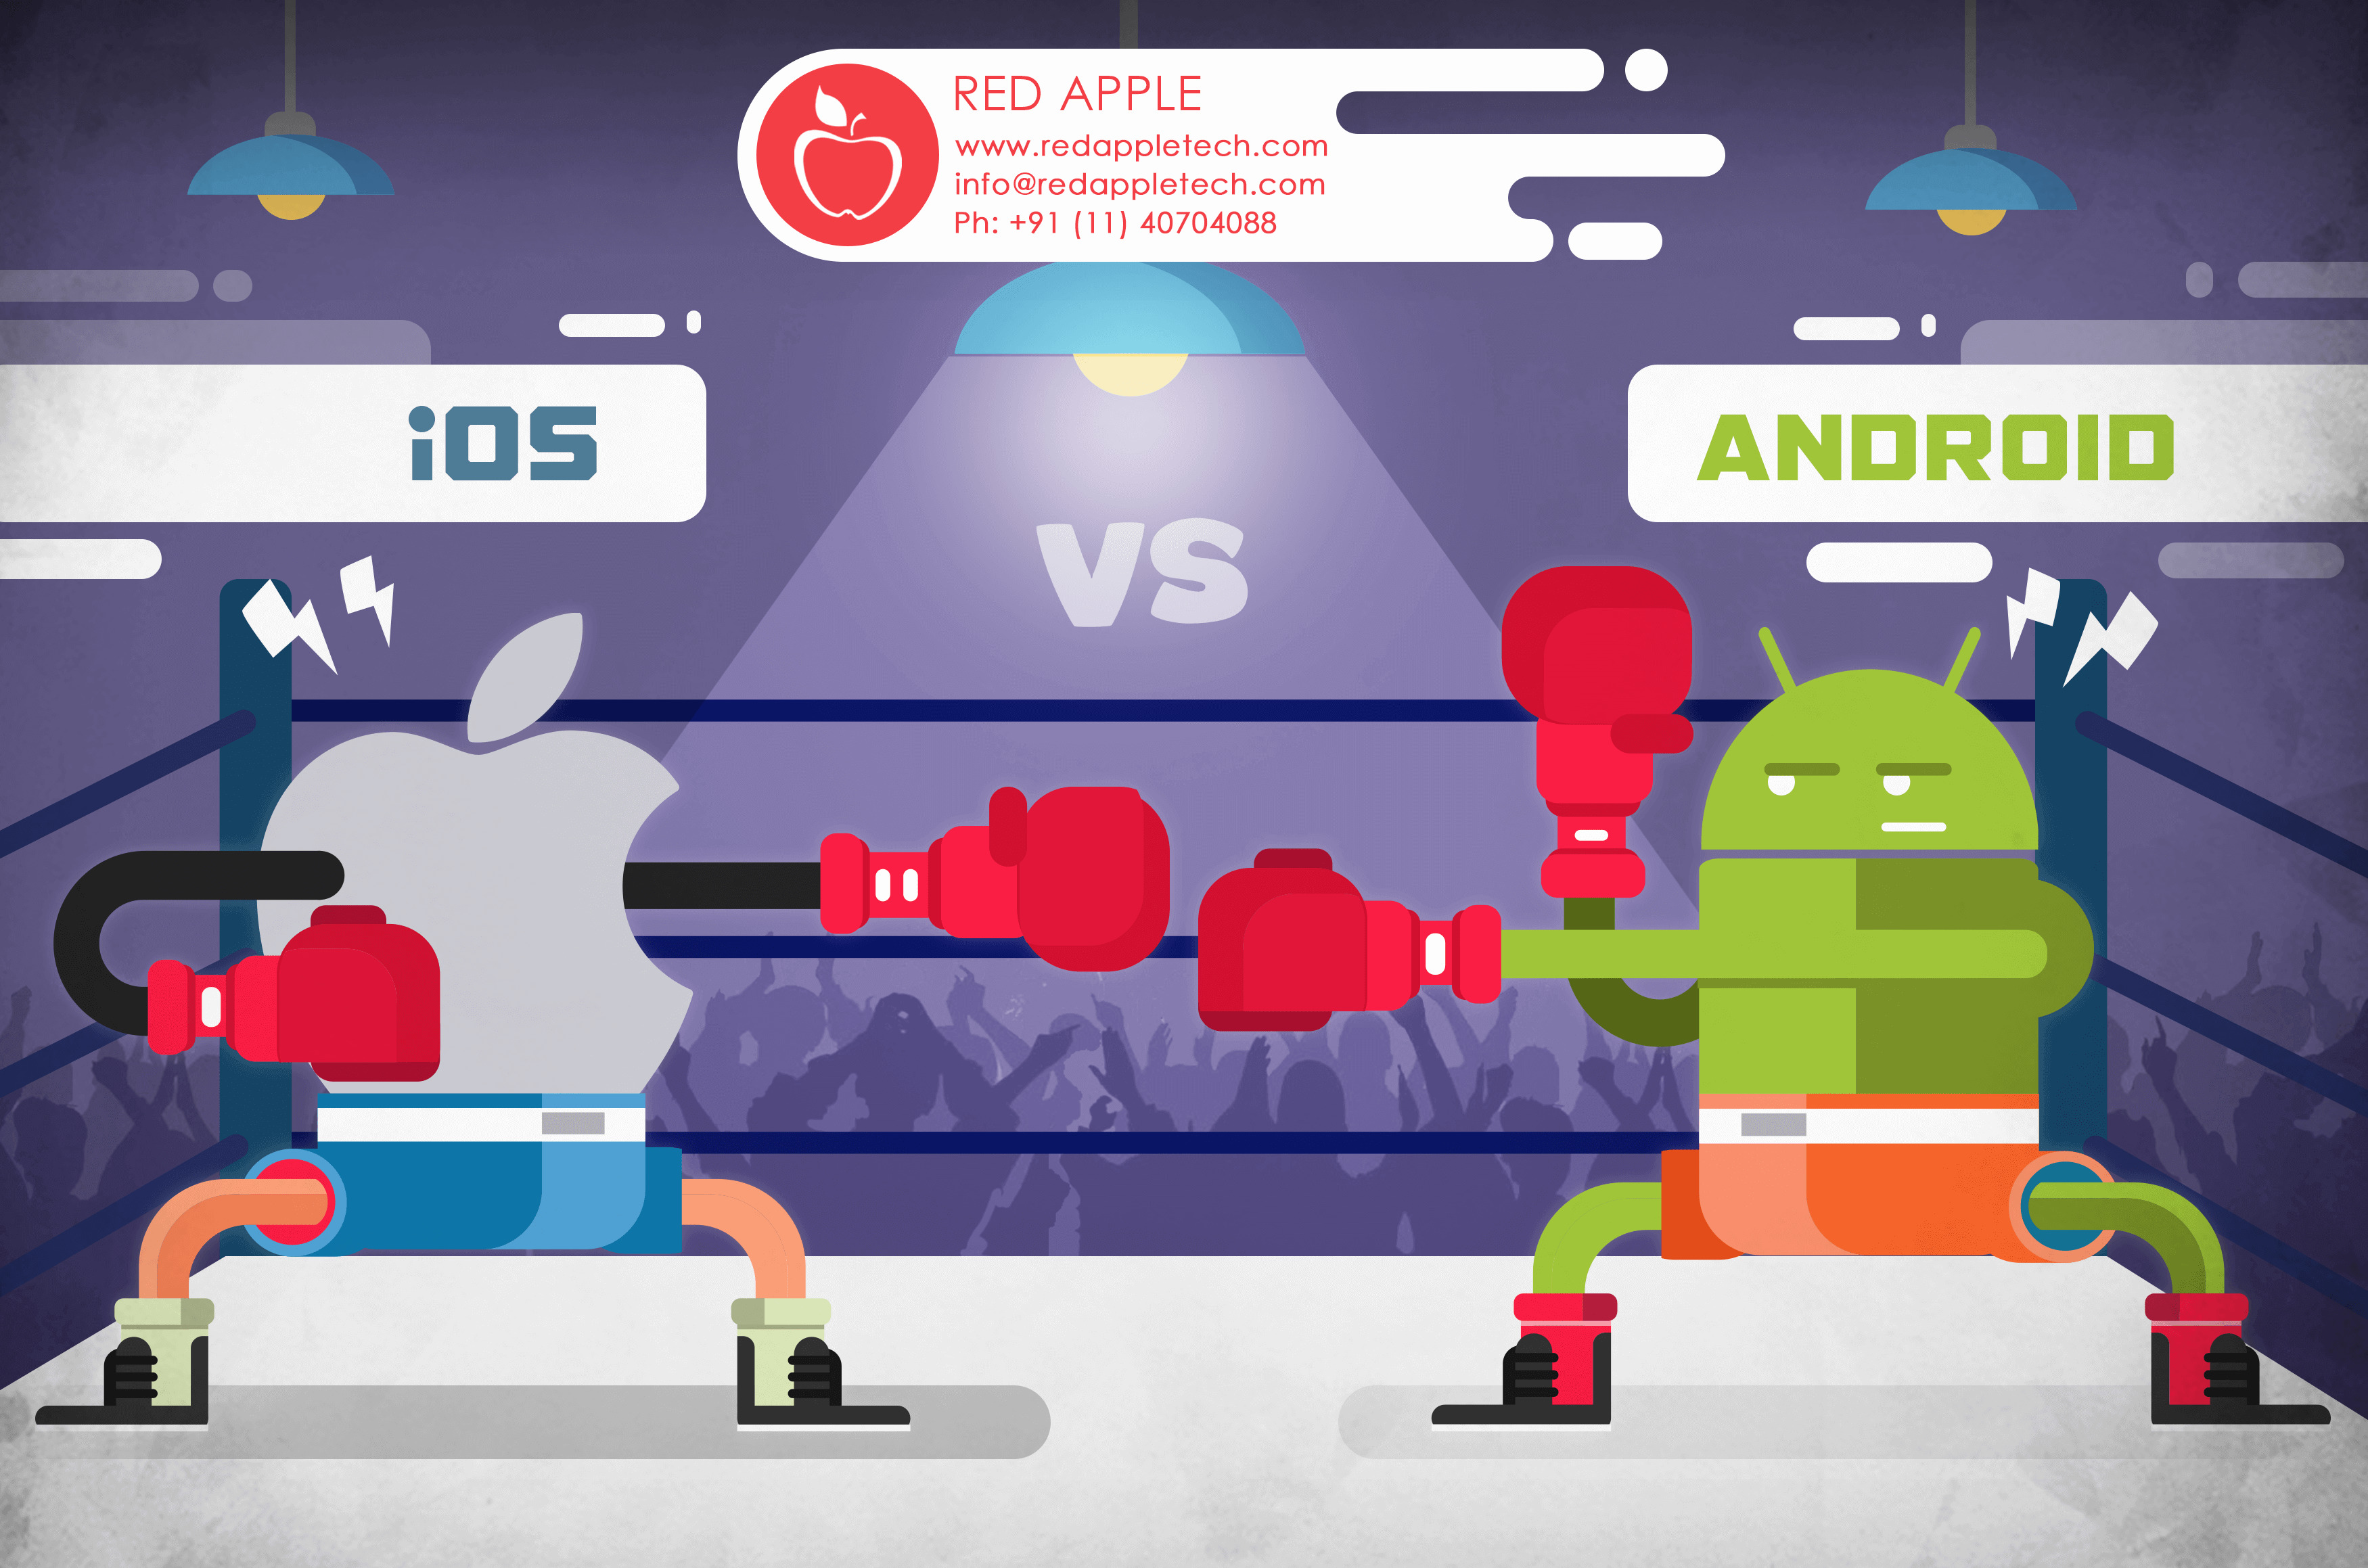 Android dick. Андроид против айос. Битва айос и андроид. Битва андроида и айфона. IOS против Android.